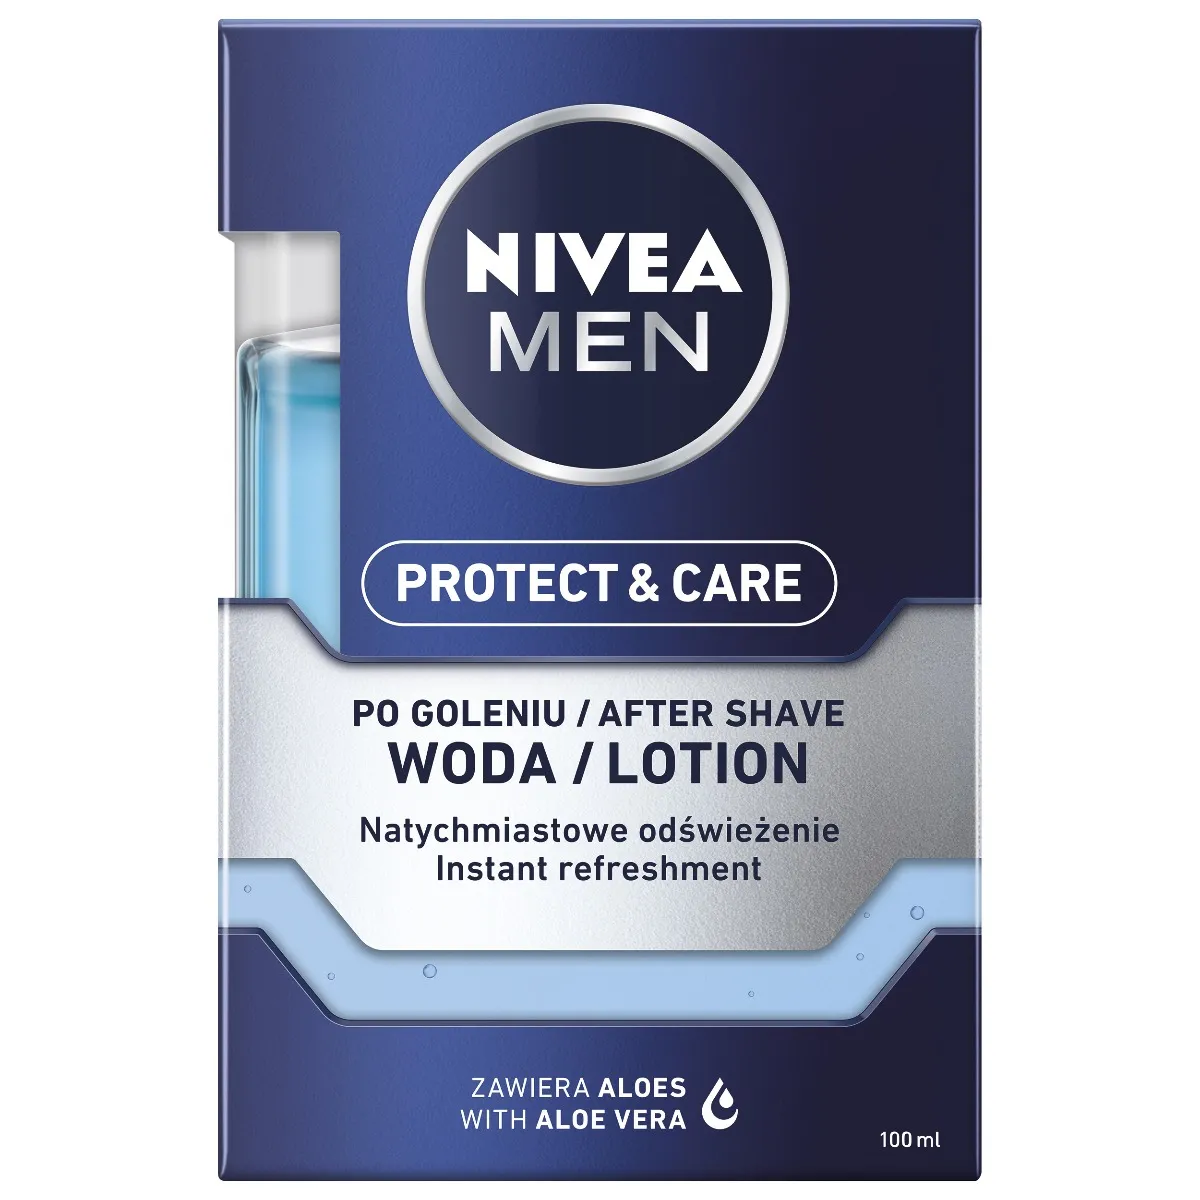 Nivea Men Protect & Care odświeżająca woda po goleniu, 100 ml